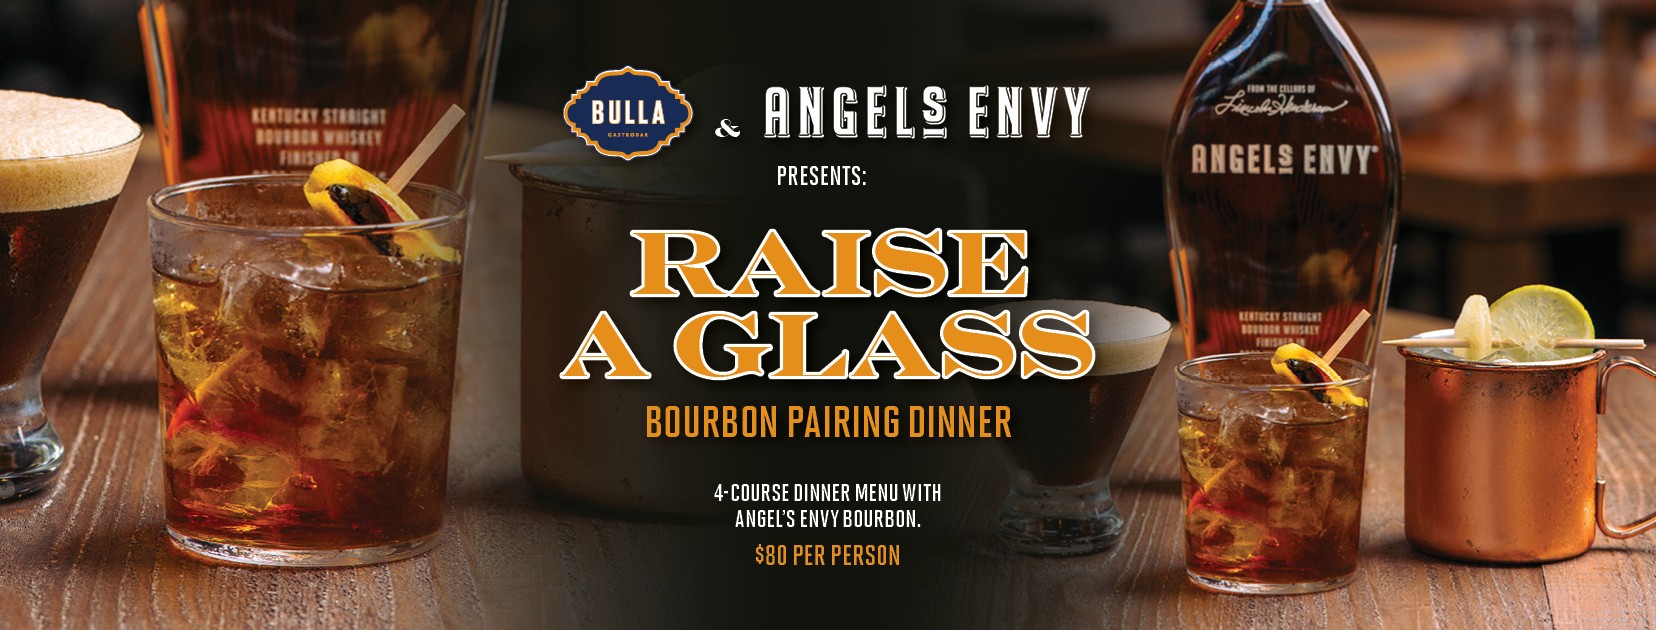 Bulla and Angel's Envy Bourbon Pairing Dinner